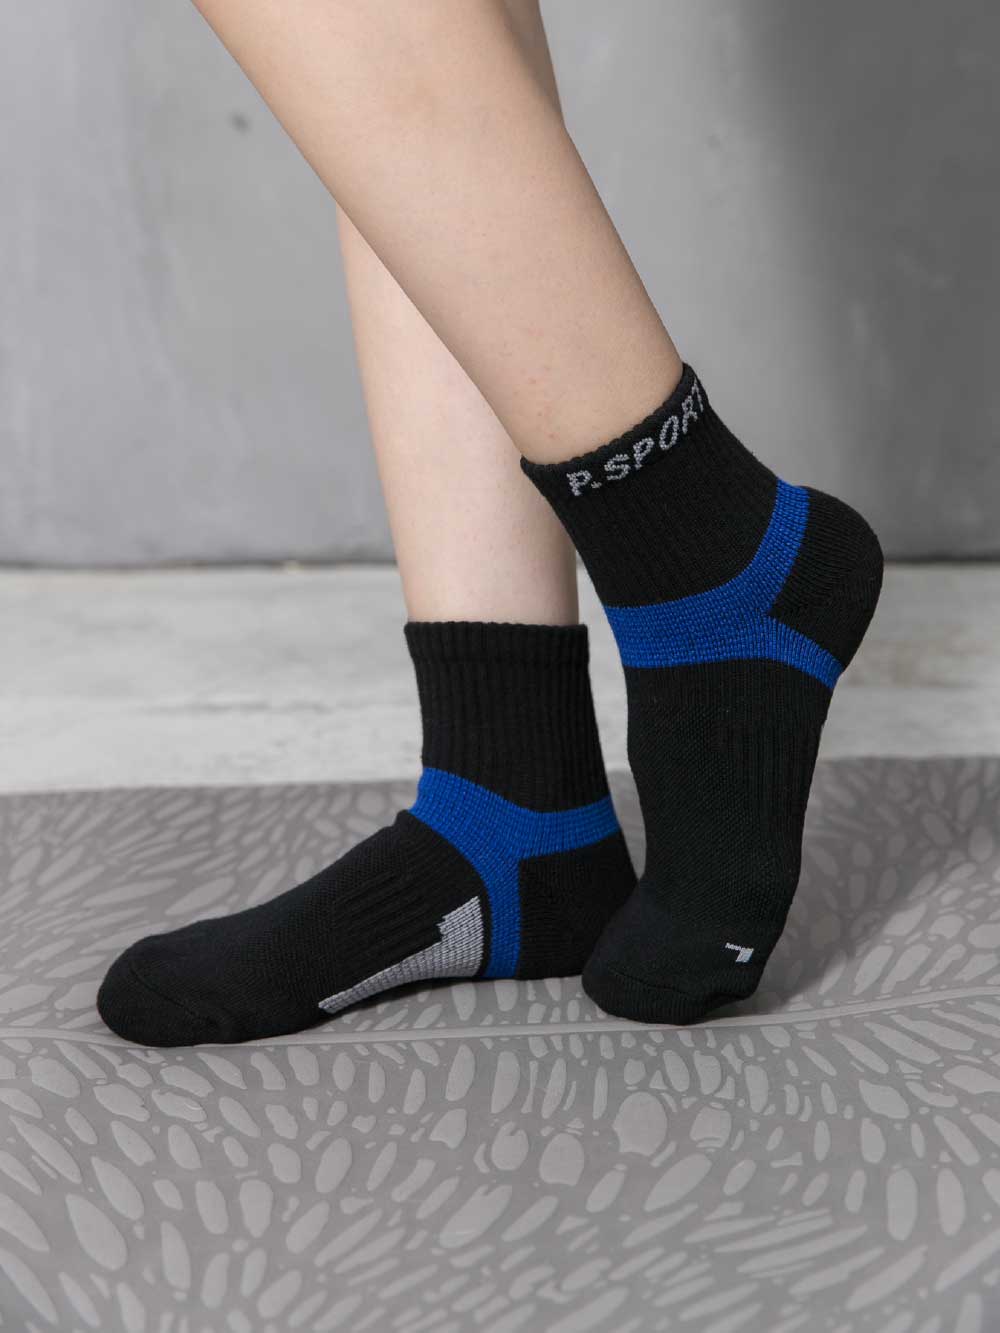 貝柔足弓加壓護足氣墊短襪-深藍(M)